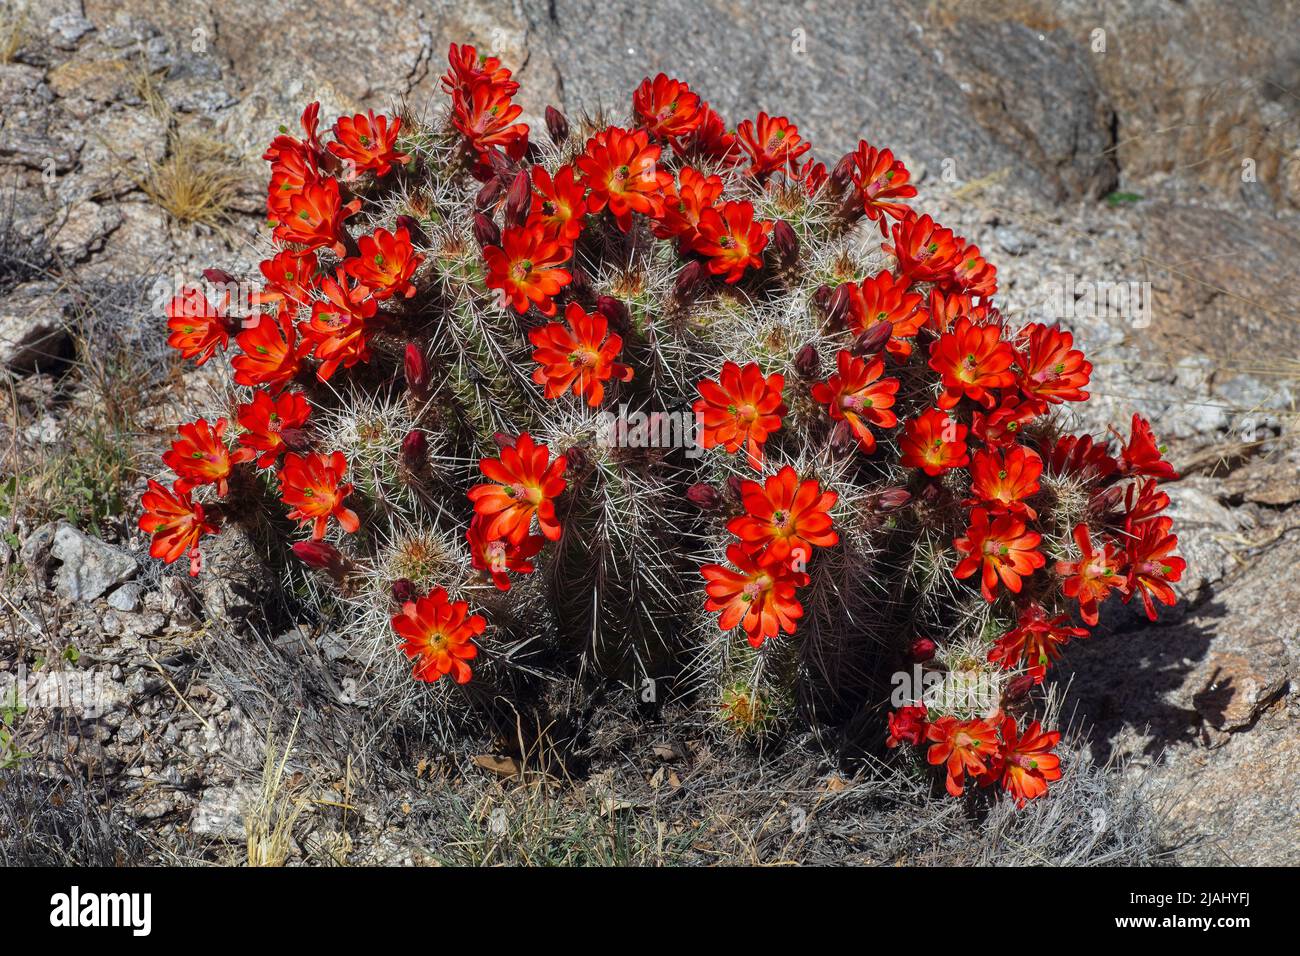 Claret Cup Cactus in Full Bloom, Echinocereus triglochidiatus Stock Photo